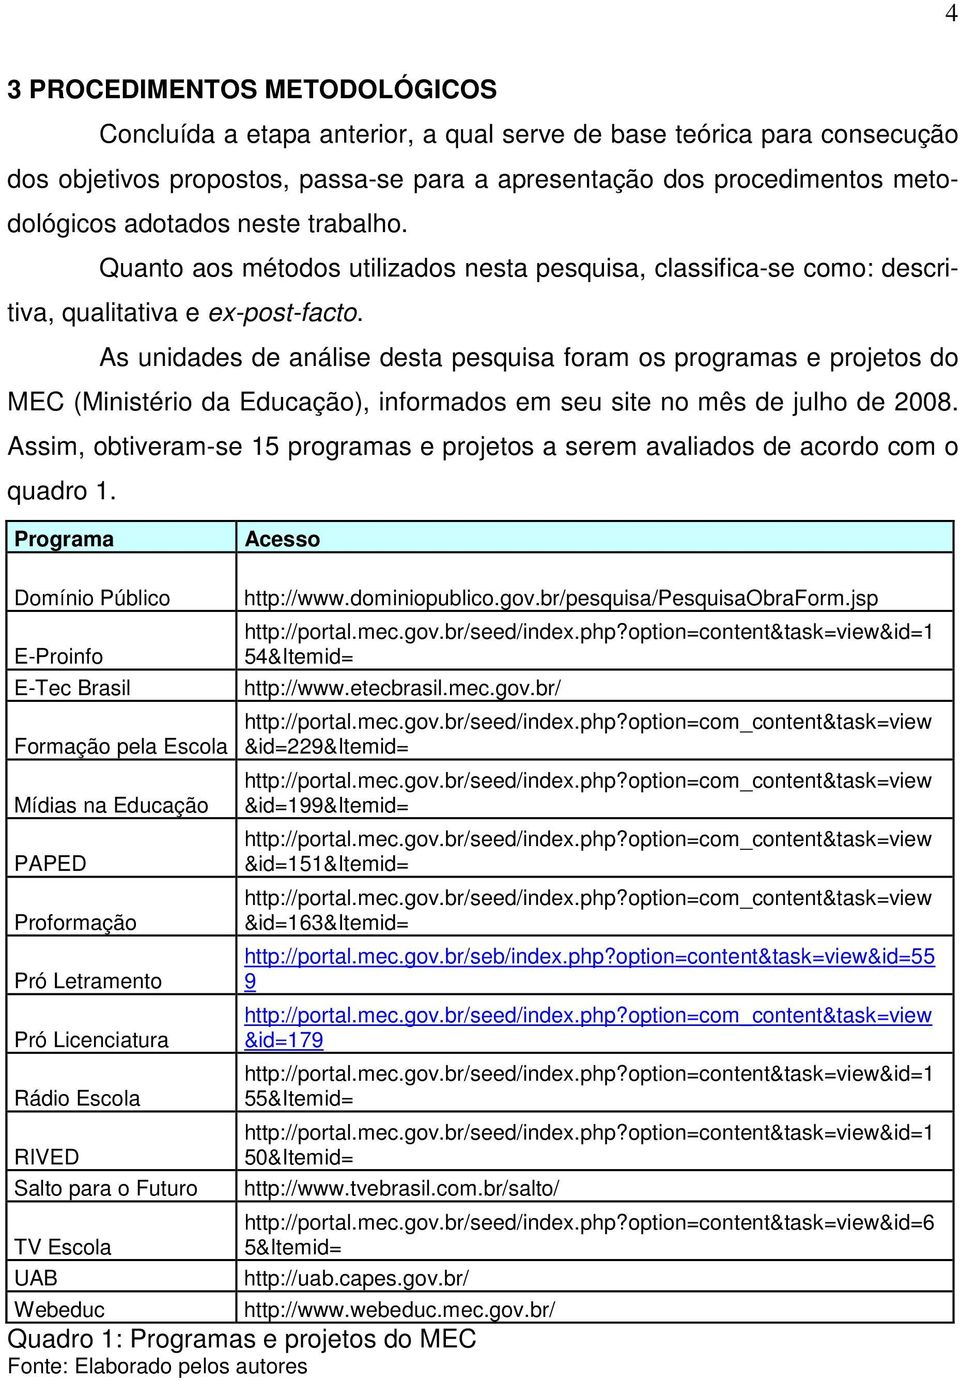 As unidades de análise desta pesquisa foram os programas e projetos do MEC (Ministério da Educação), informados em seu site no mês de julho de 2008.